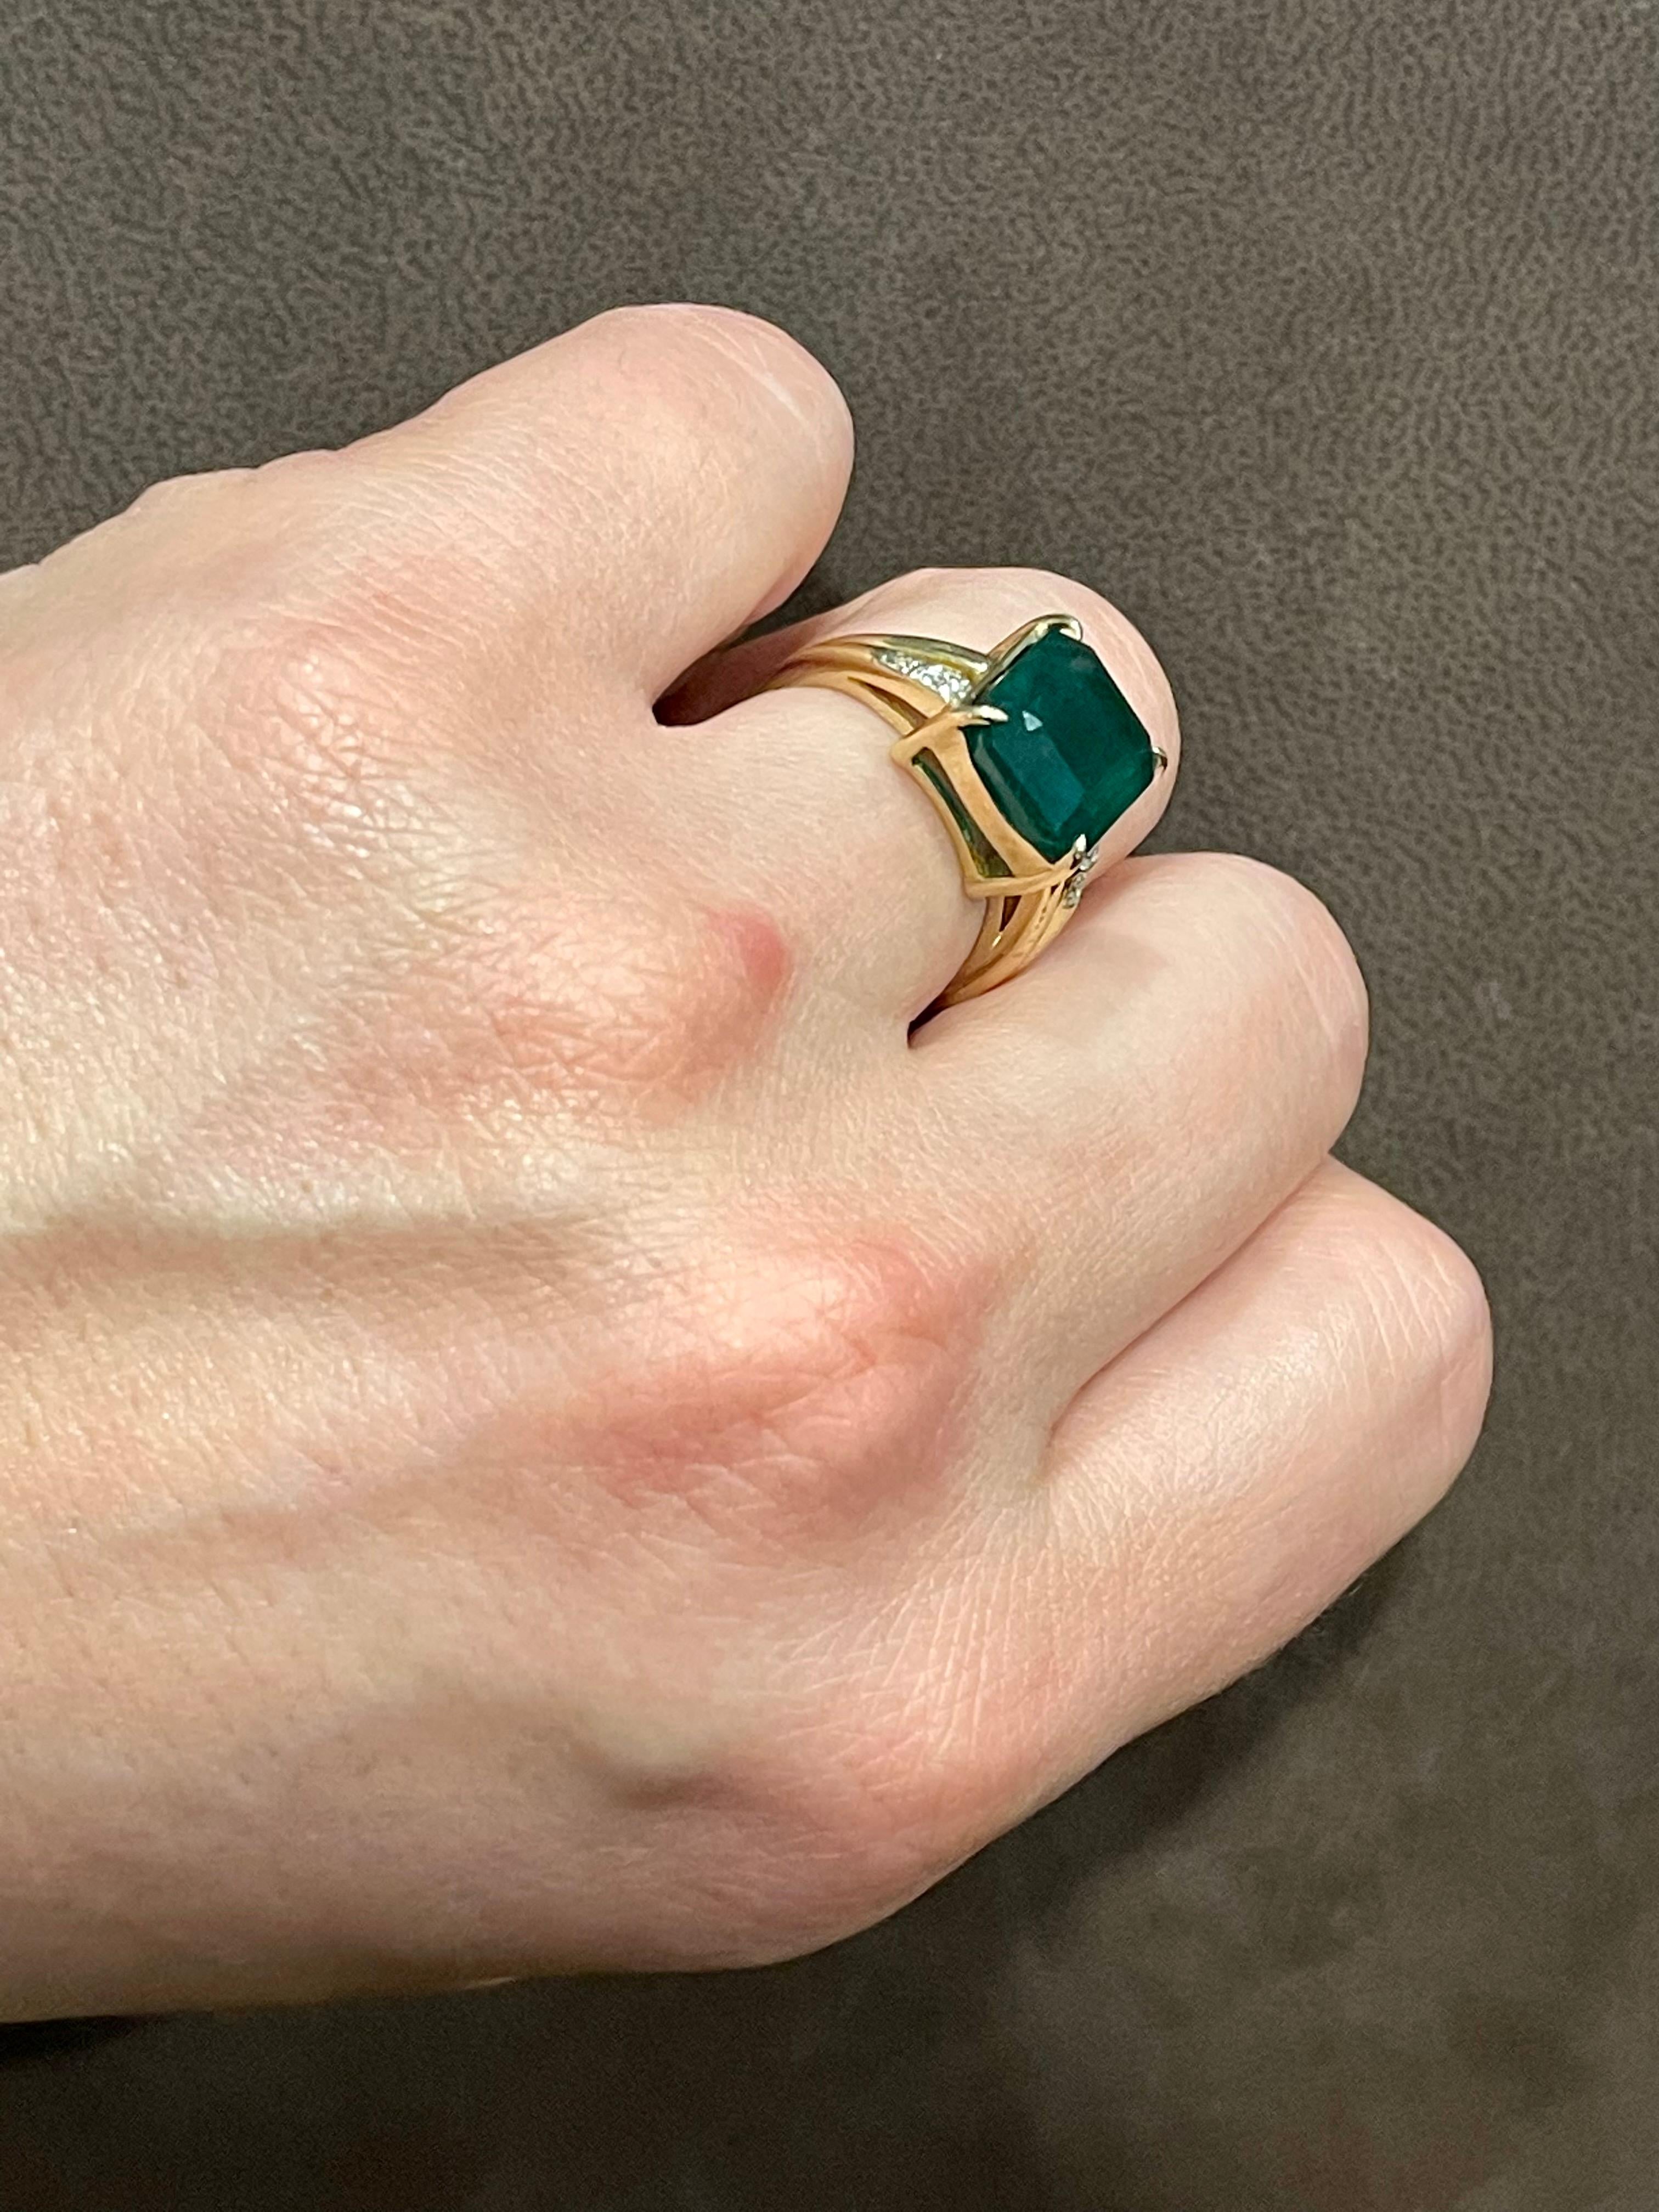 4.5 Carat Natural Emerald Cut Emerald Ring 14 Karat Yellow Gold 11